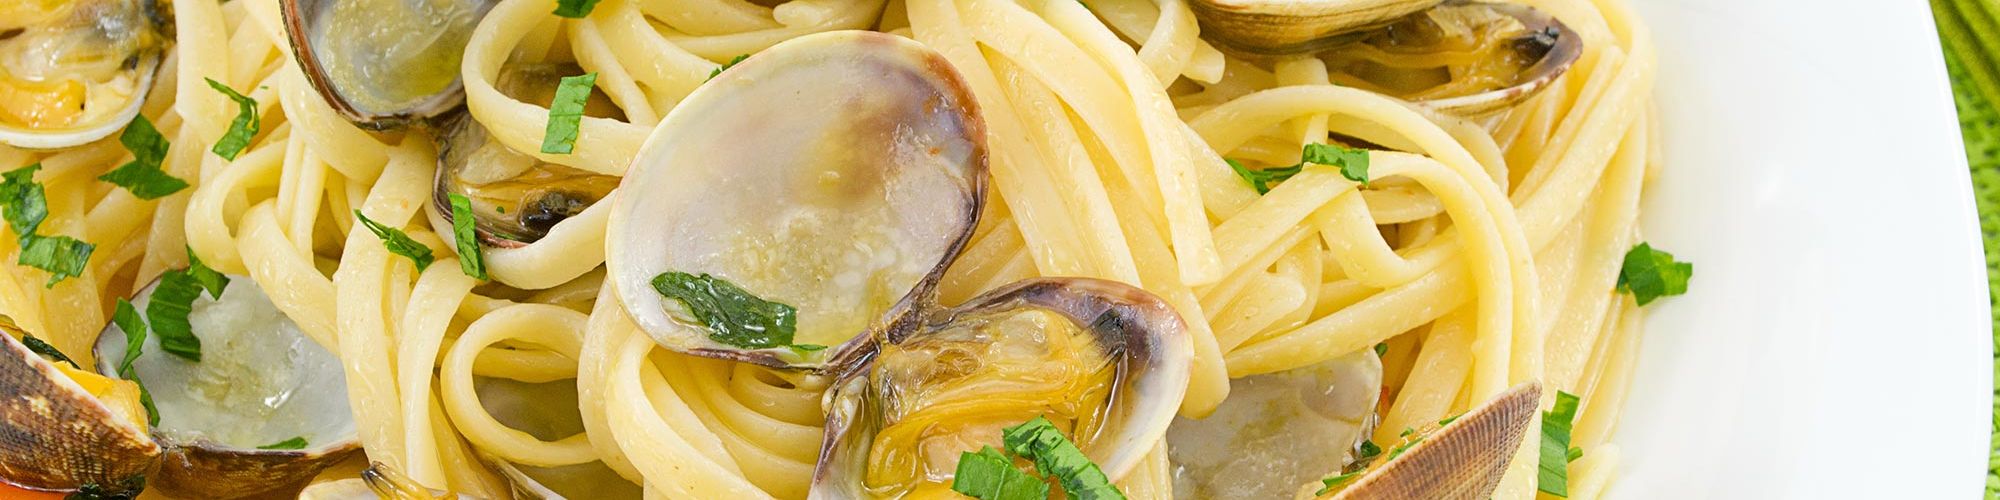 ricetta Tagliolini alle vongole veraci con pasta fresca